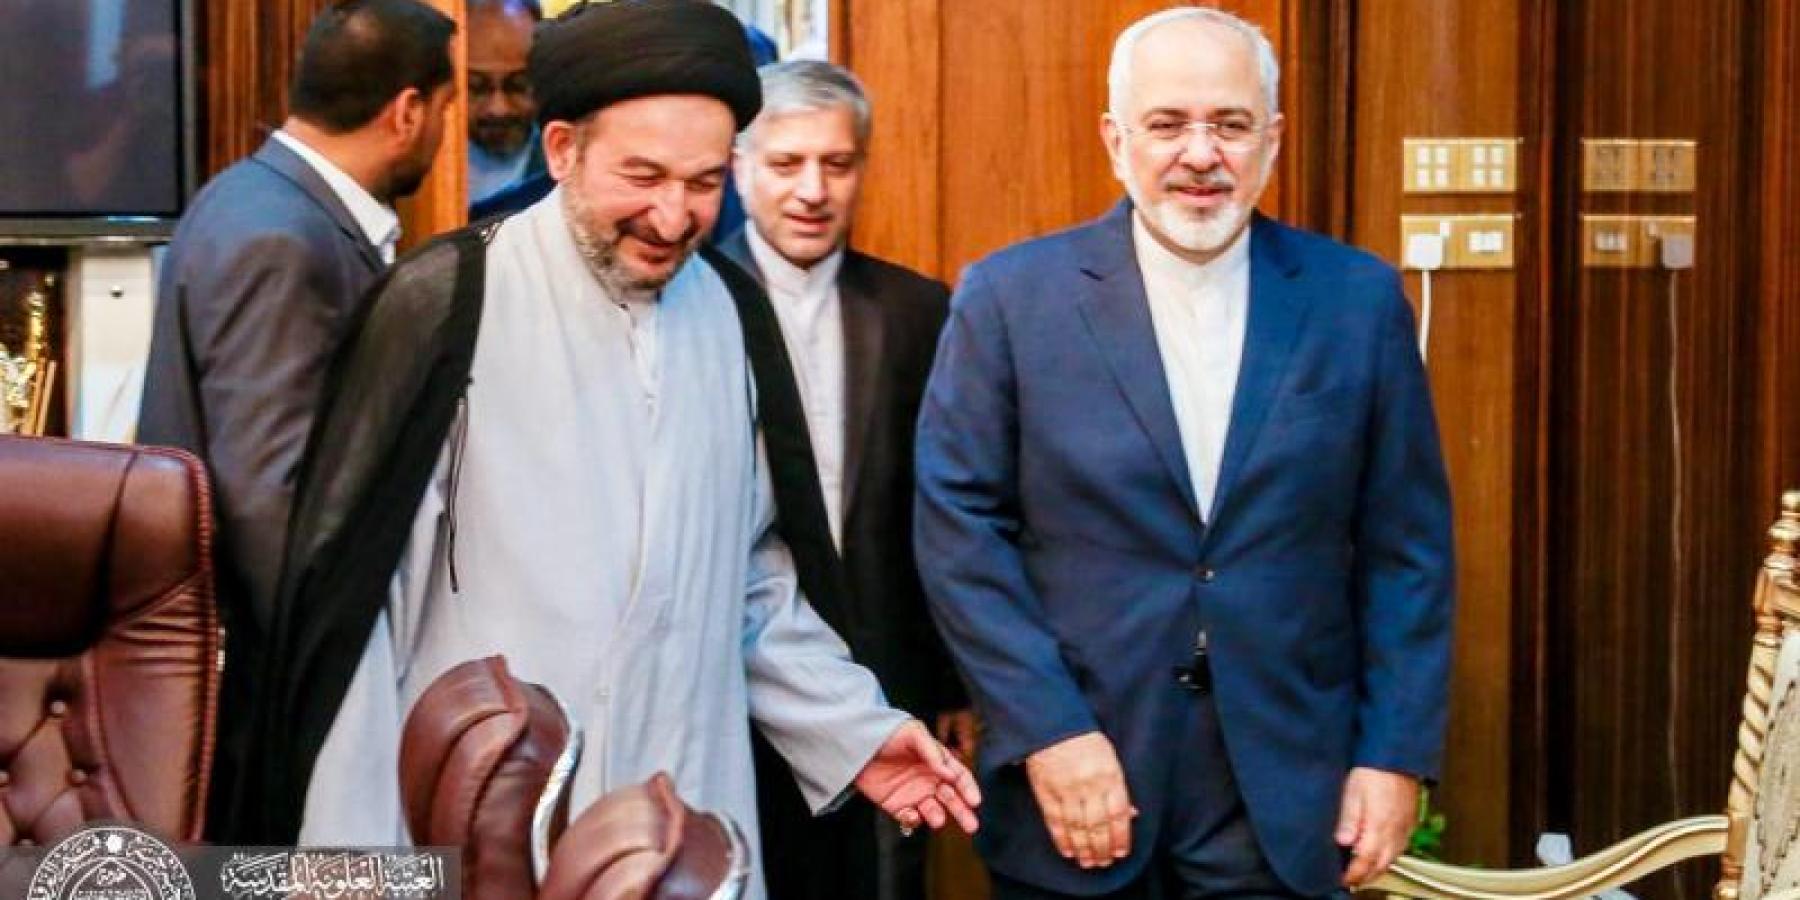 الامين العام للعتبة العلوية المقدسة يستقبل وزير الخارجية الايراني والوفد المرافق له